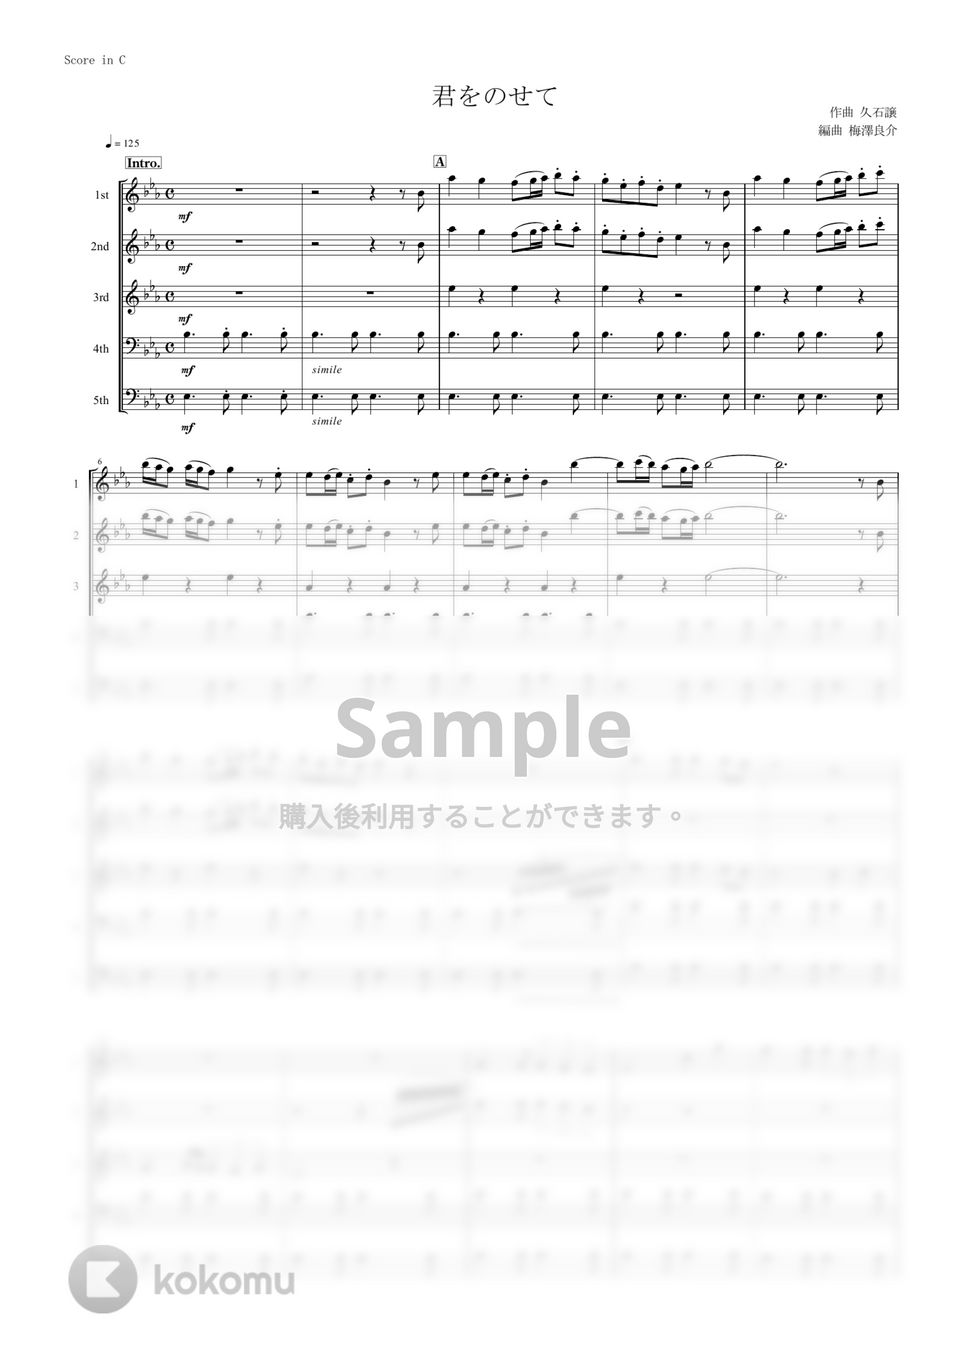 天空の城ラピュタ - 君をのせて (管楽器5重奏) by muta-sax